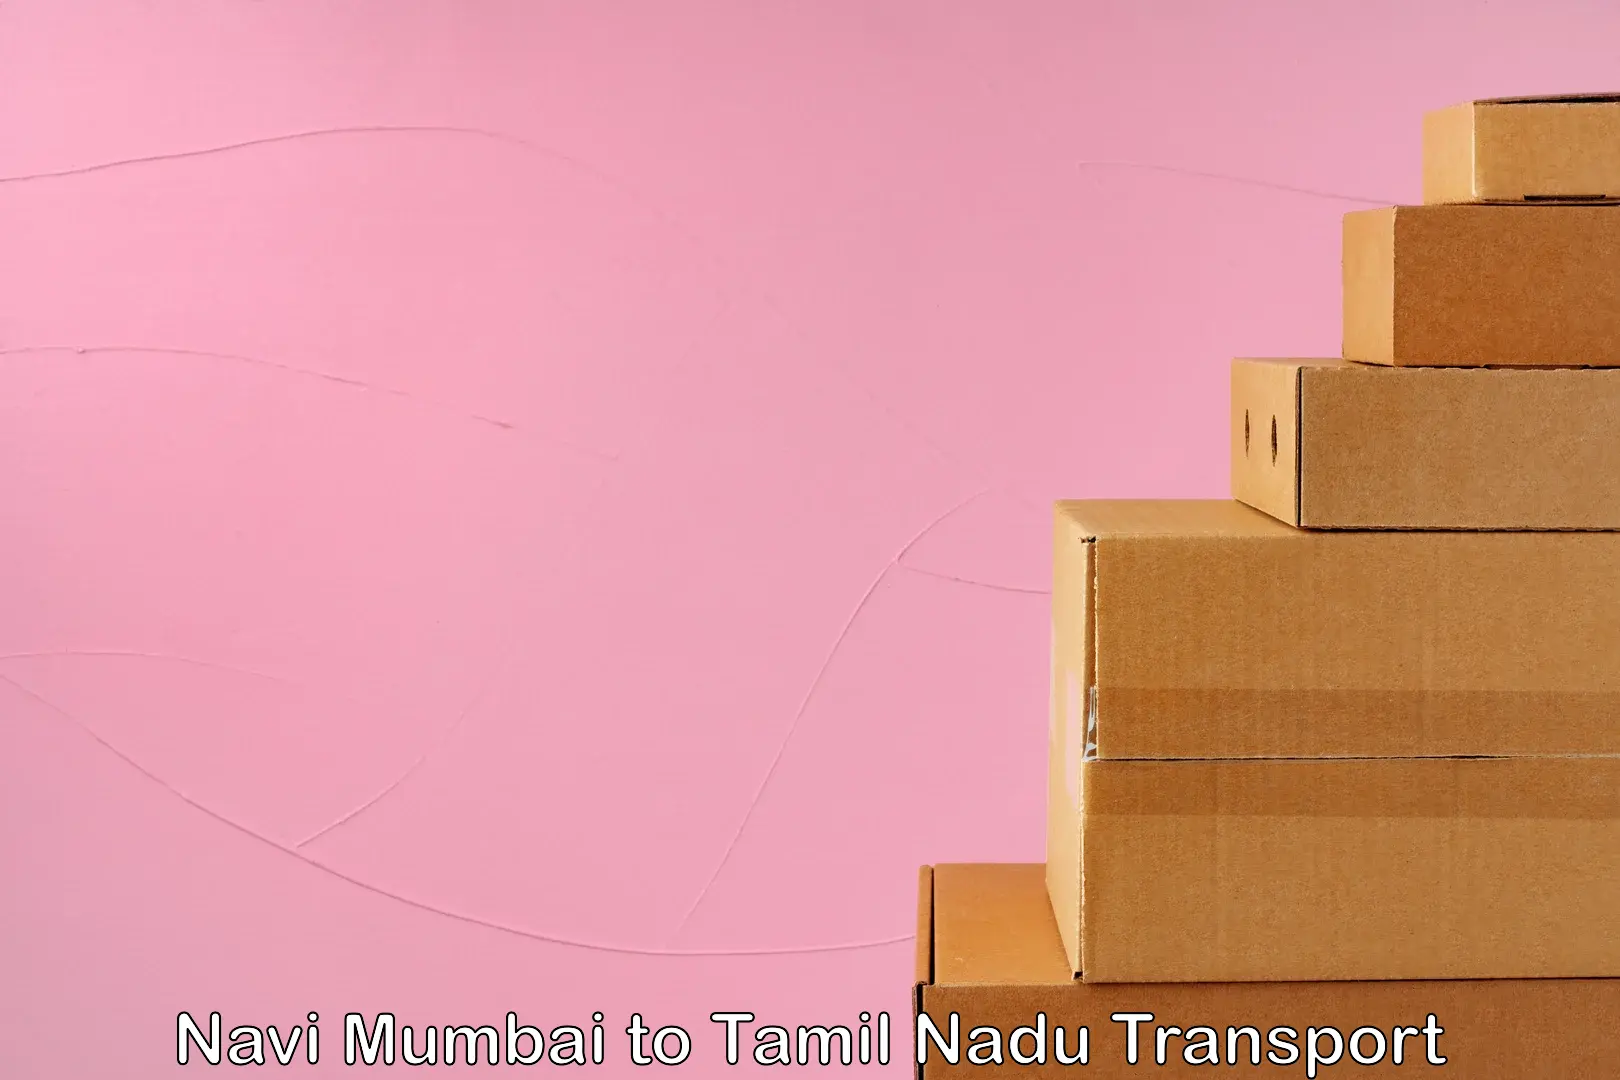 Logistics transportation services Navi Mumbai to Gobichettipalayam